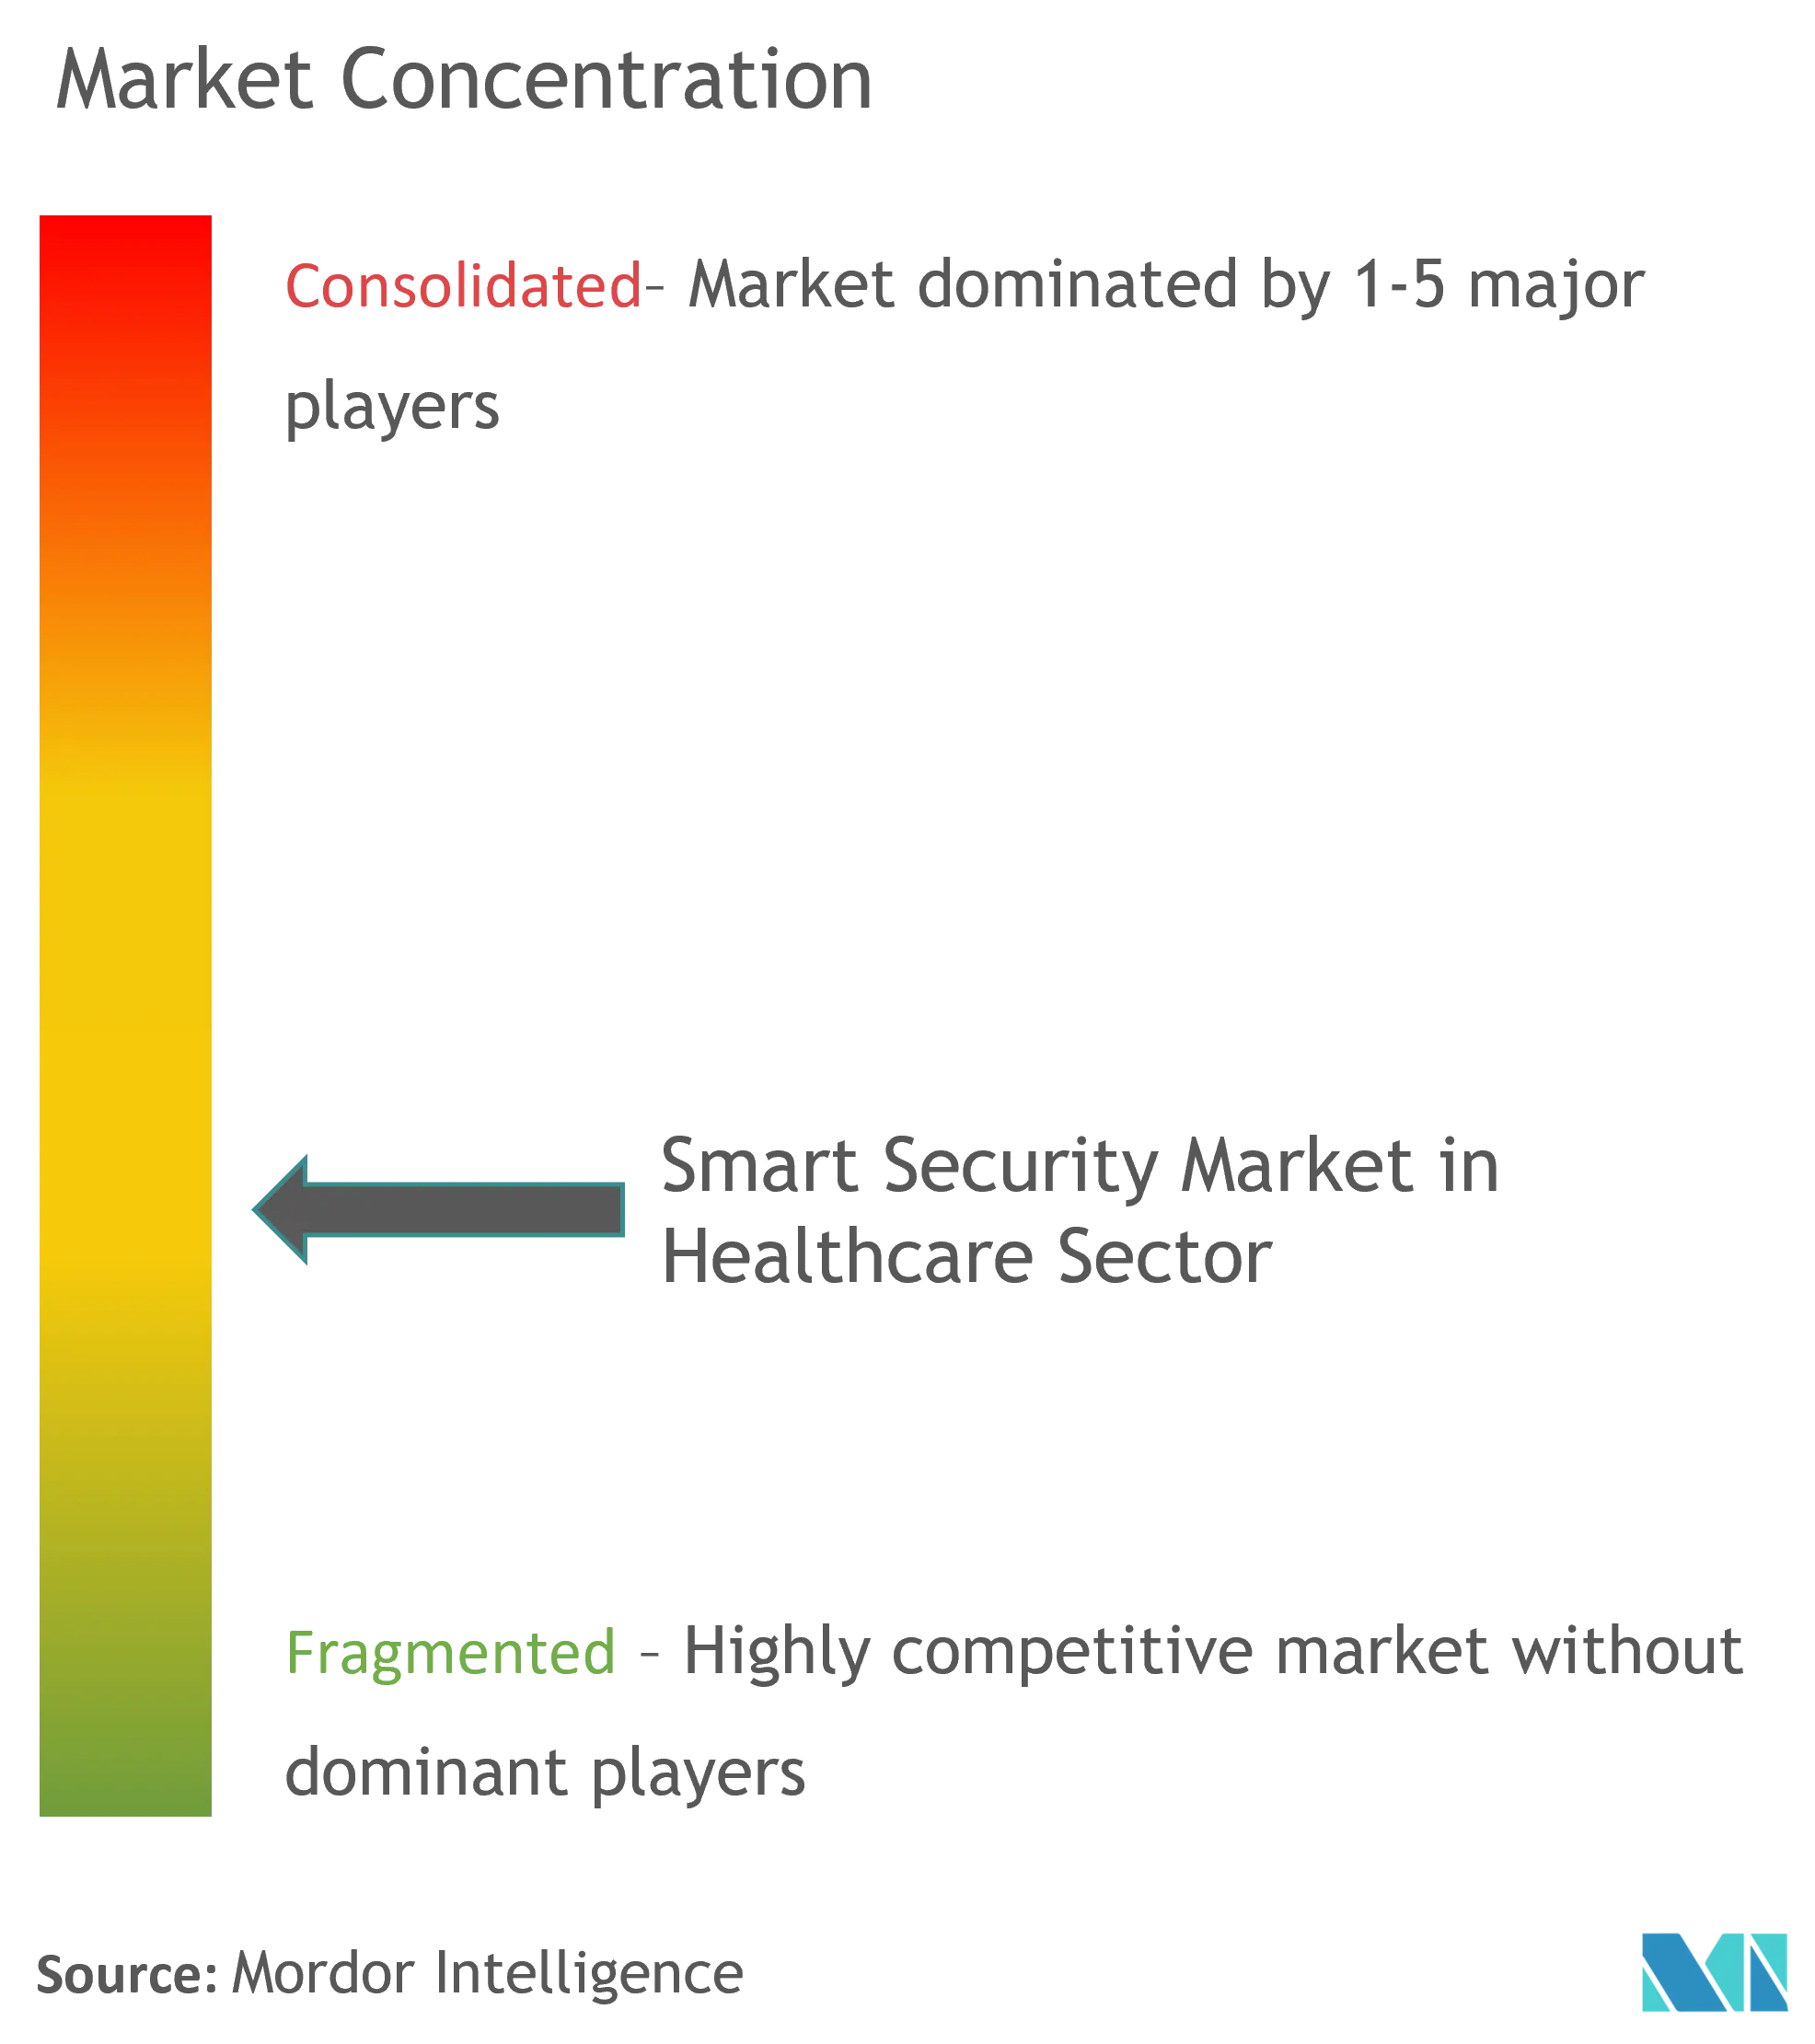 سوق الأمن الذكي في قطاع الرعاية الصحية